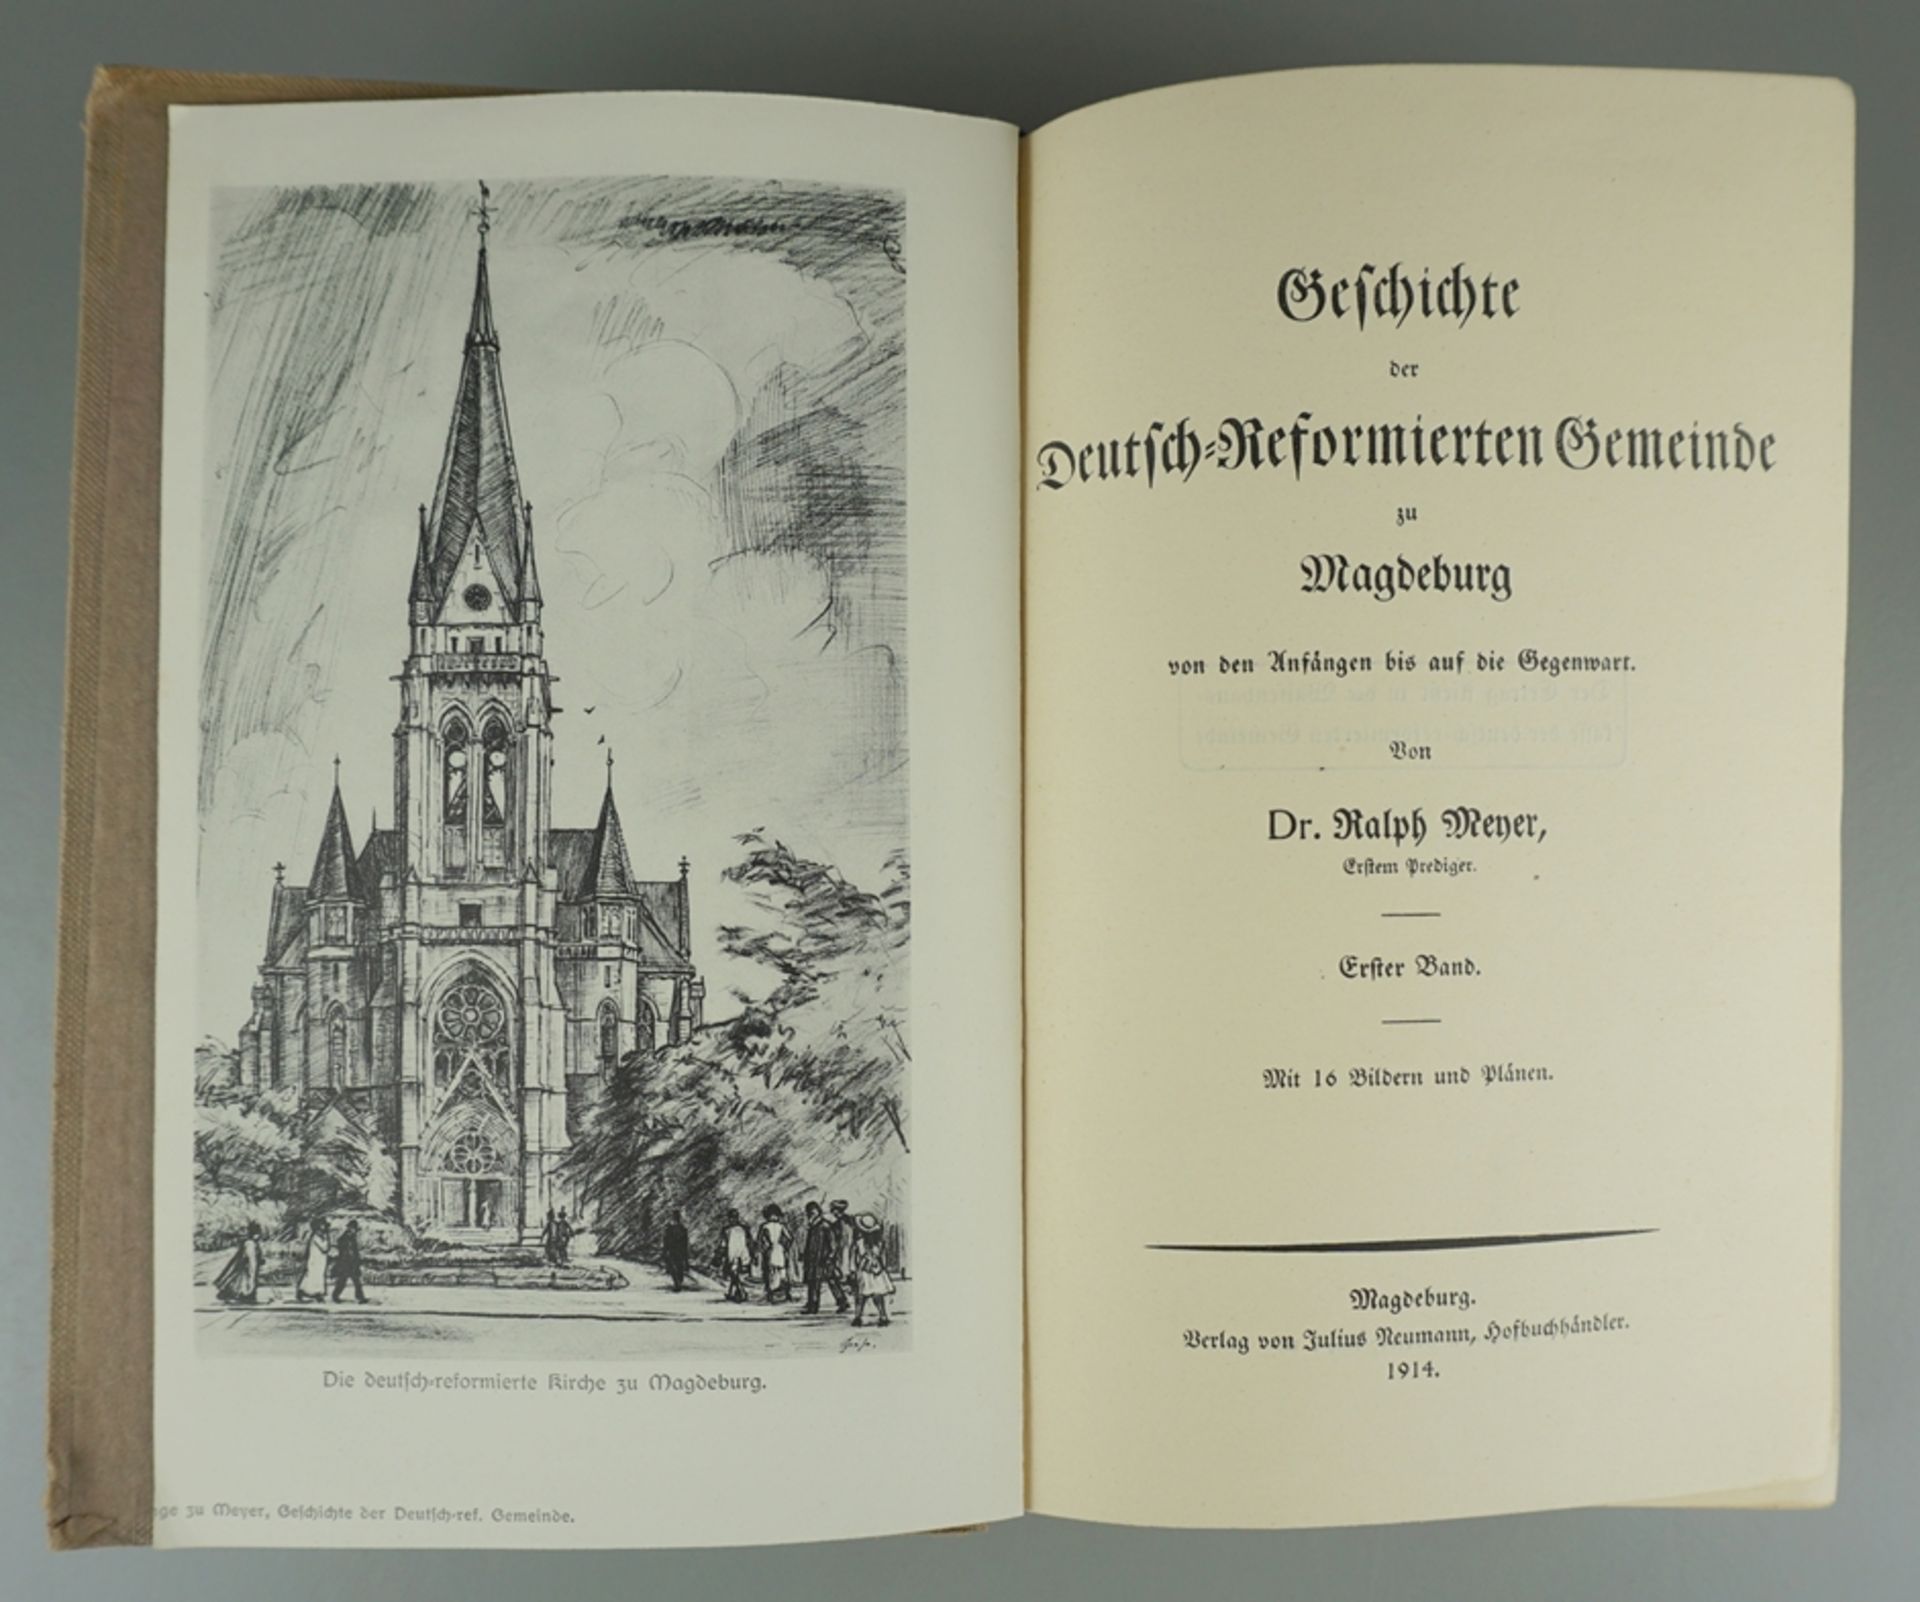 Geschichte der Deutsch-Reformierten Gemeinde zu Magdeburg, 1914 - Image 2 of 2